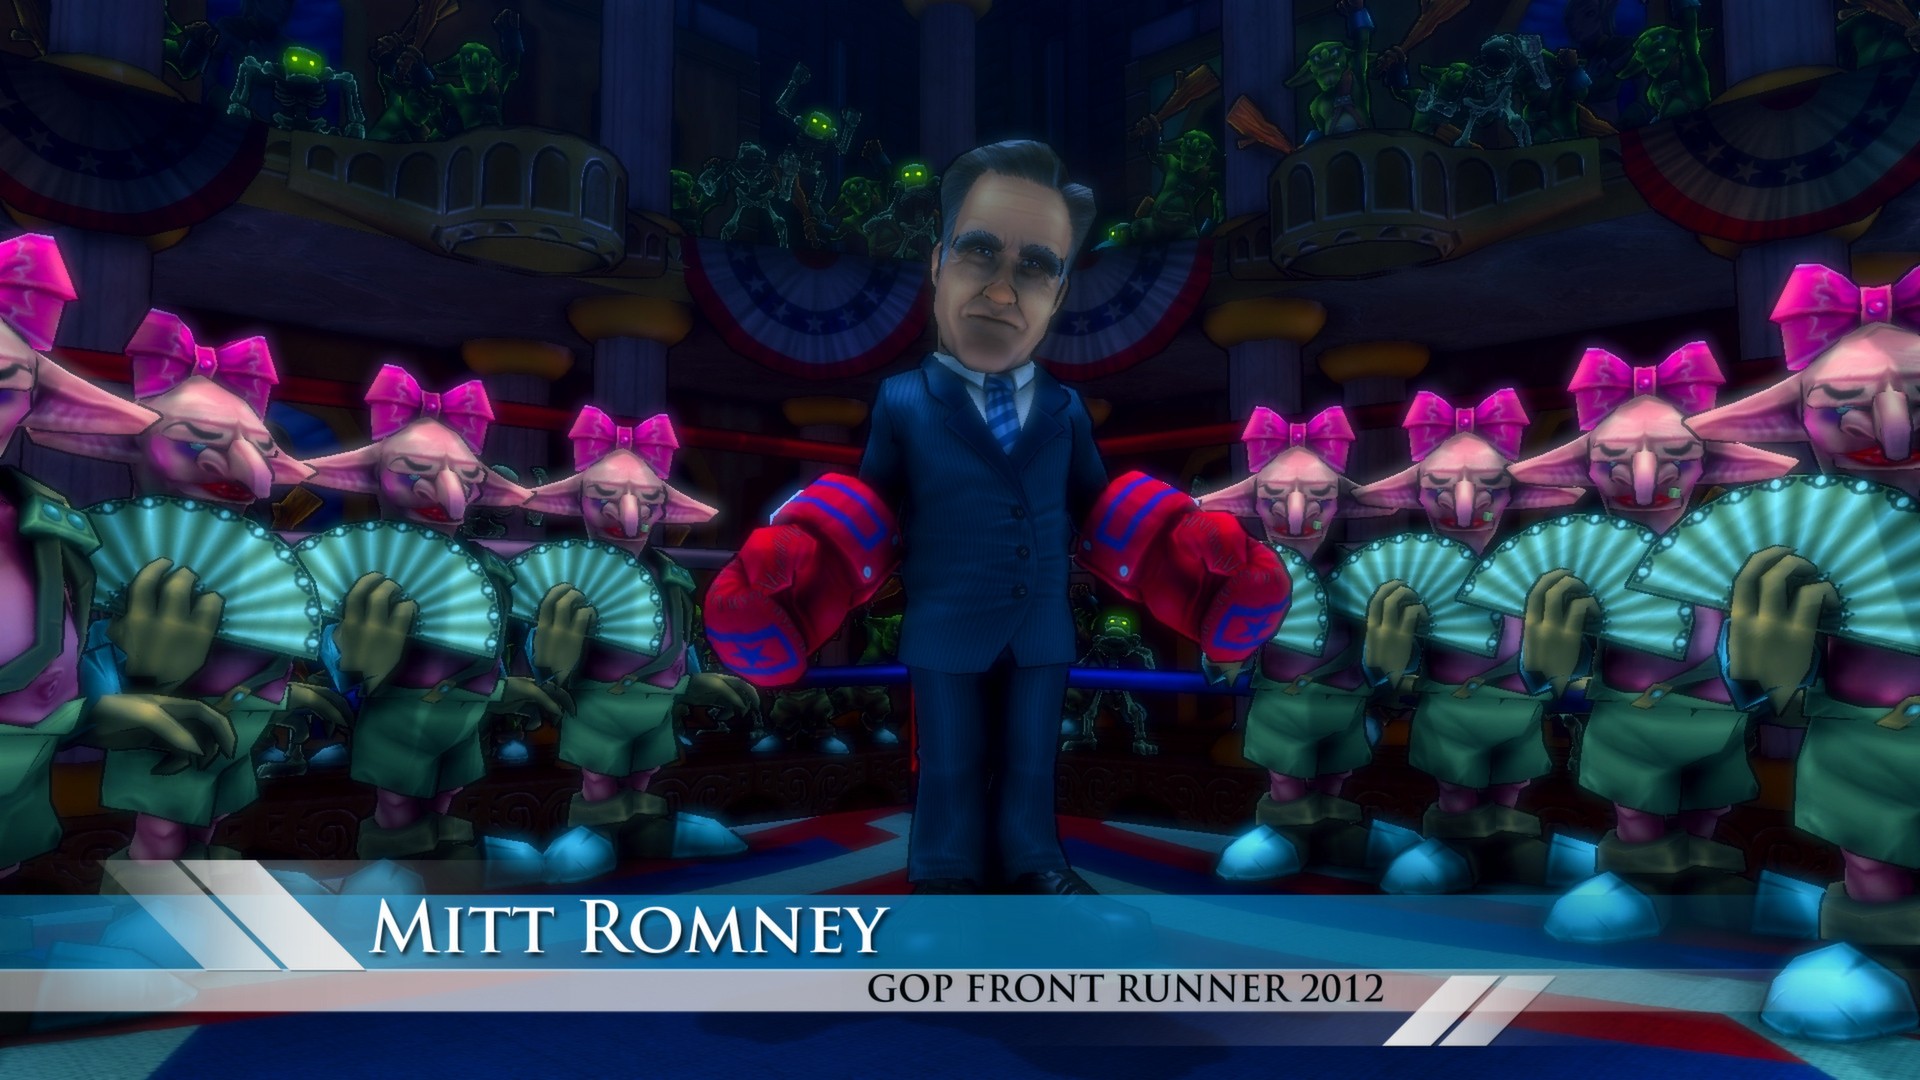 video games, Dungeon Defenders, Mitt Romney - desktop wallpaper